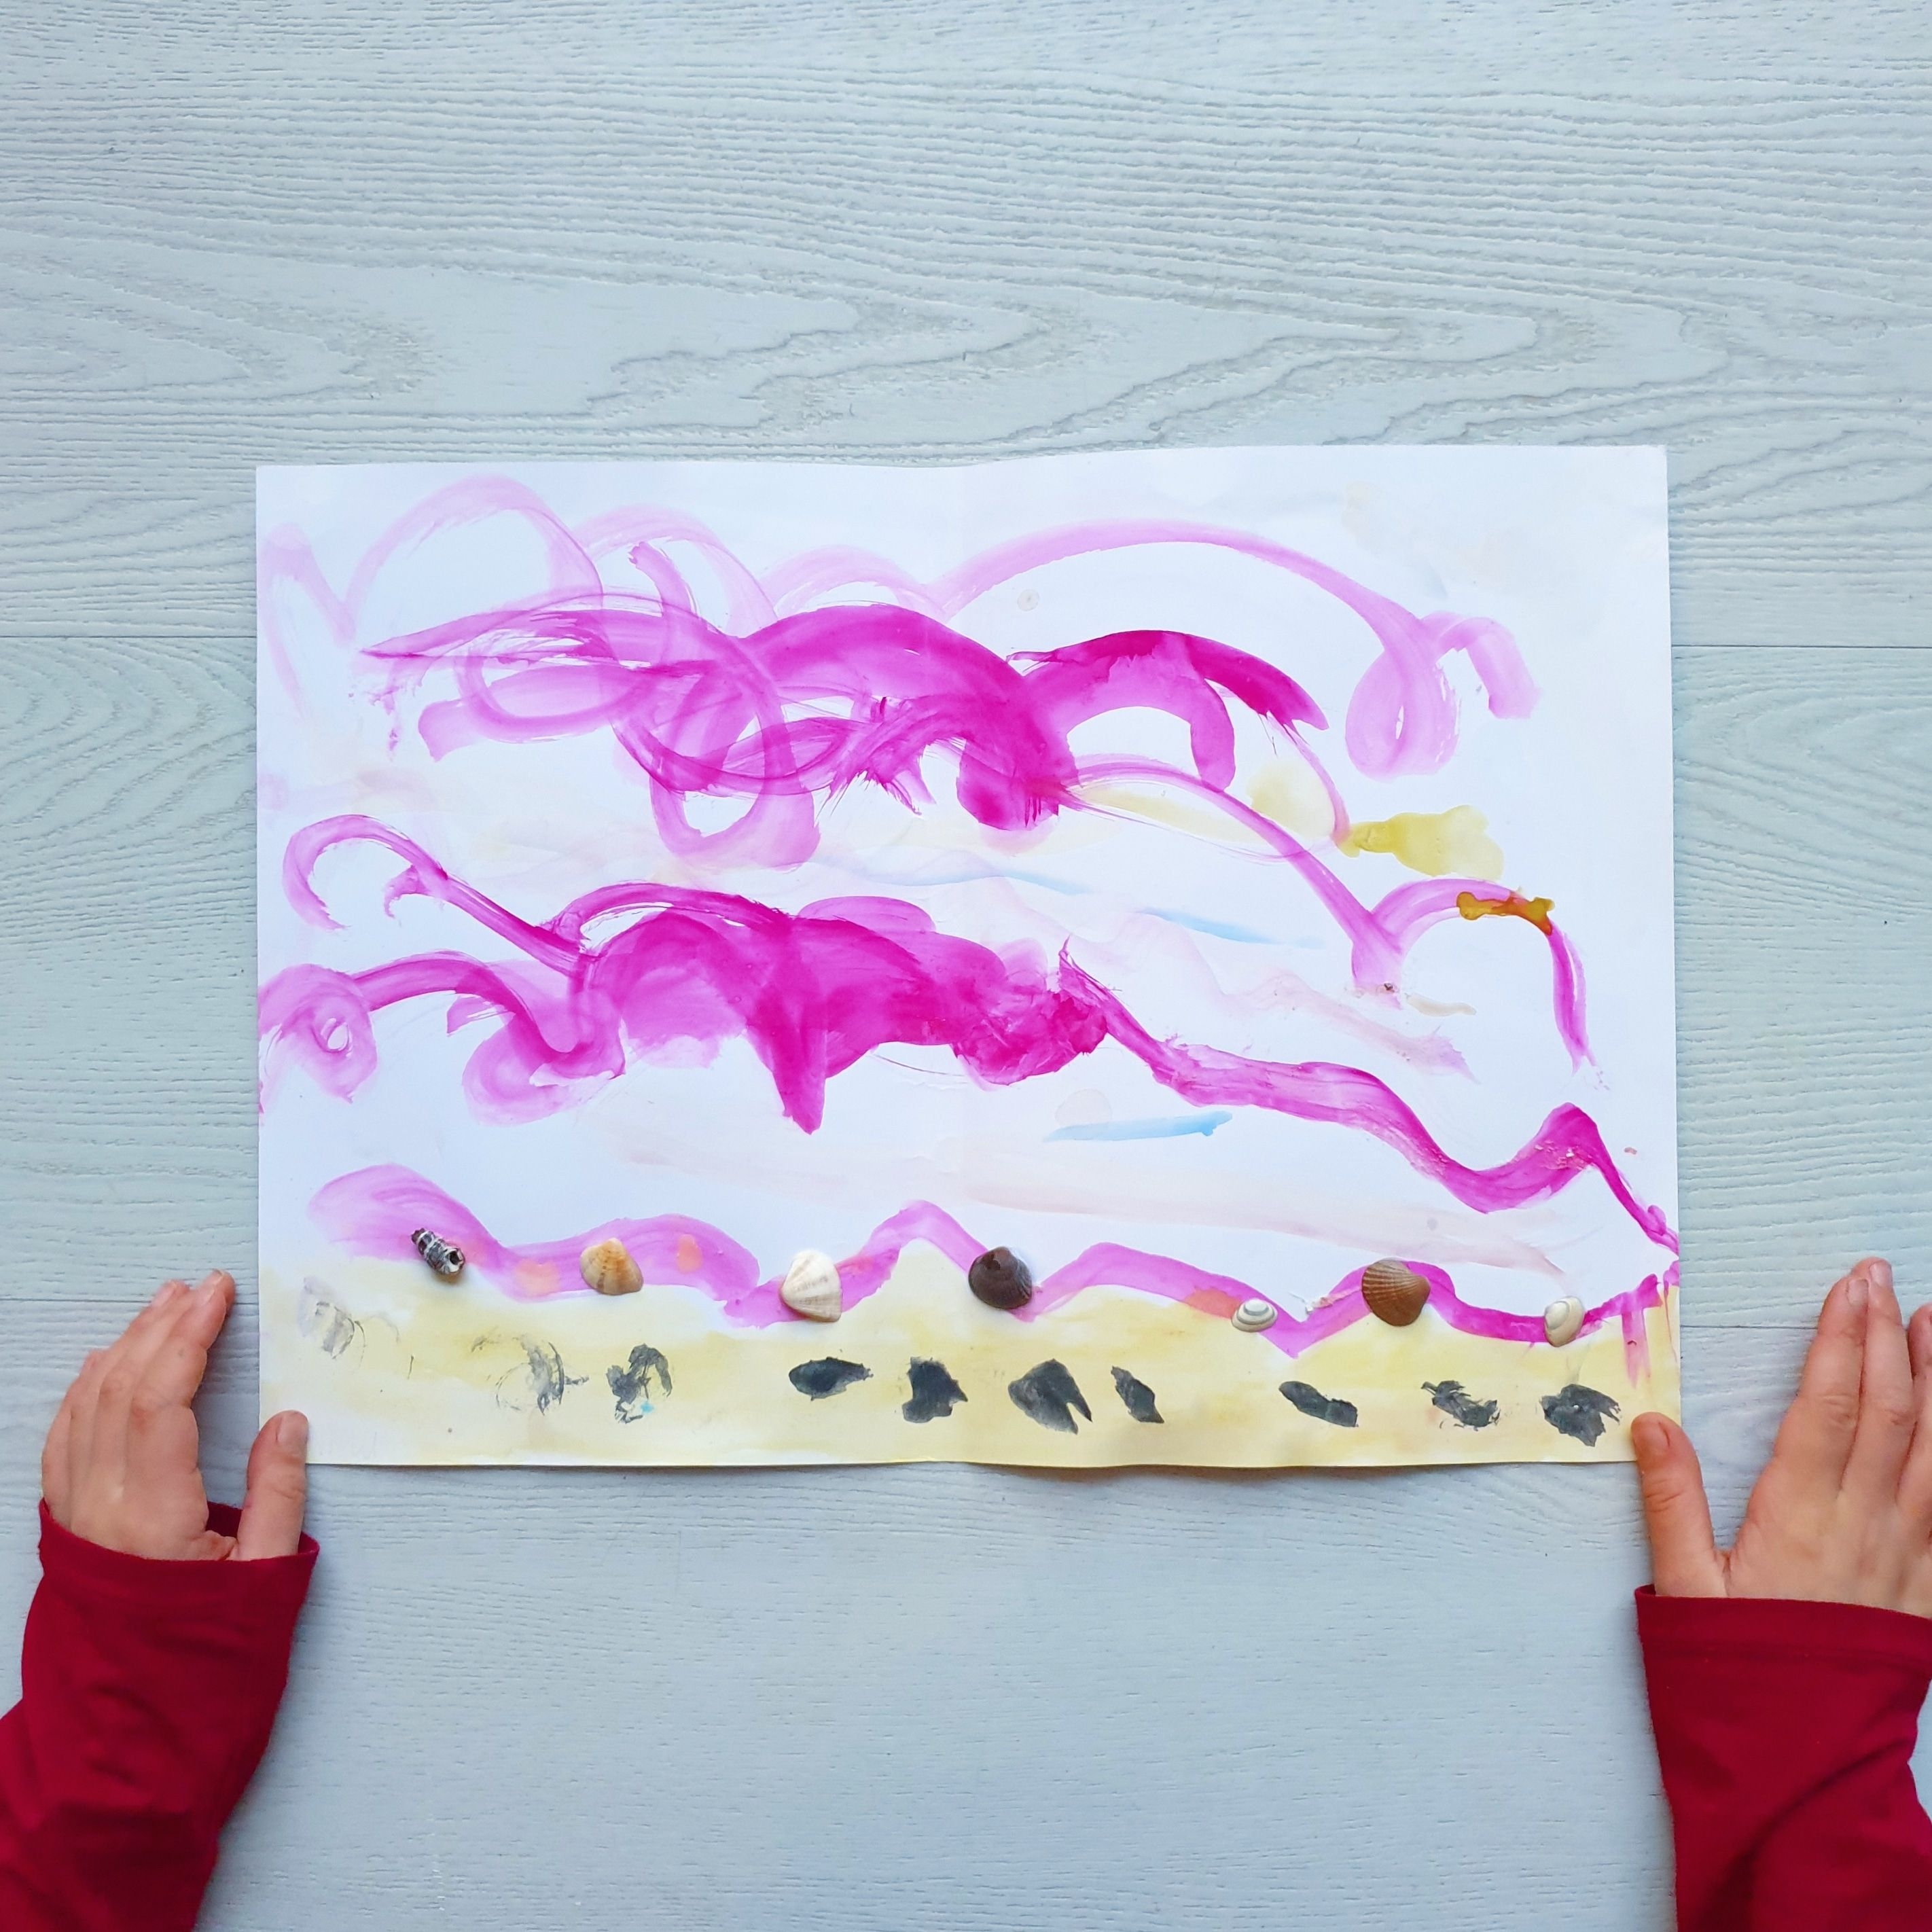 100 ideeën om te knutselen met peuter en kleuter. Kleine meis maakte op school dit schilderij van schelpen. Eerst schilderde ze de lucht en het strand, daarna plakte ze met knutsellijm de schelpen er op.